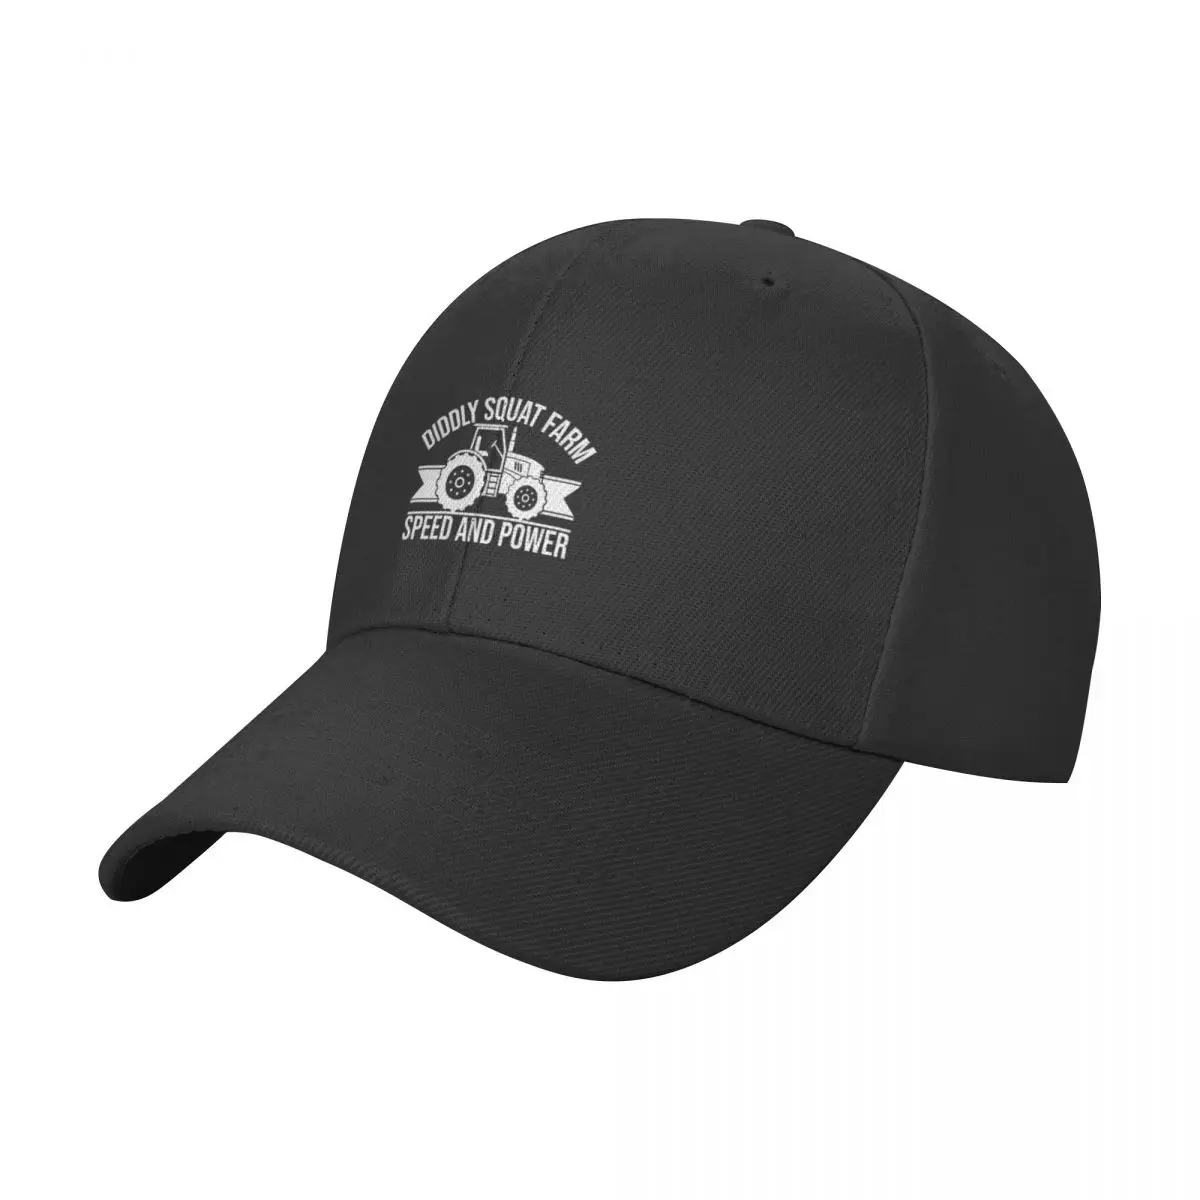 Бейсбольная кепка Diddly Squat Farm Speed And Power с капюшоном, черная рейв-шляпа, мужская и женская . ' - ' . 0